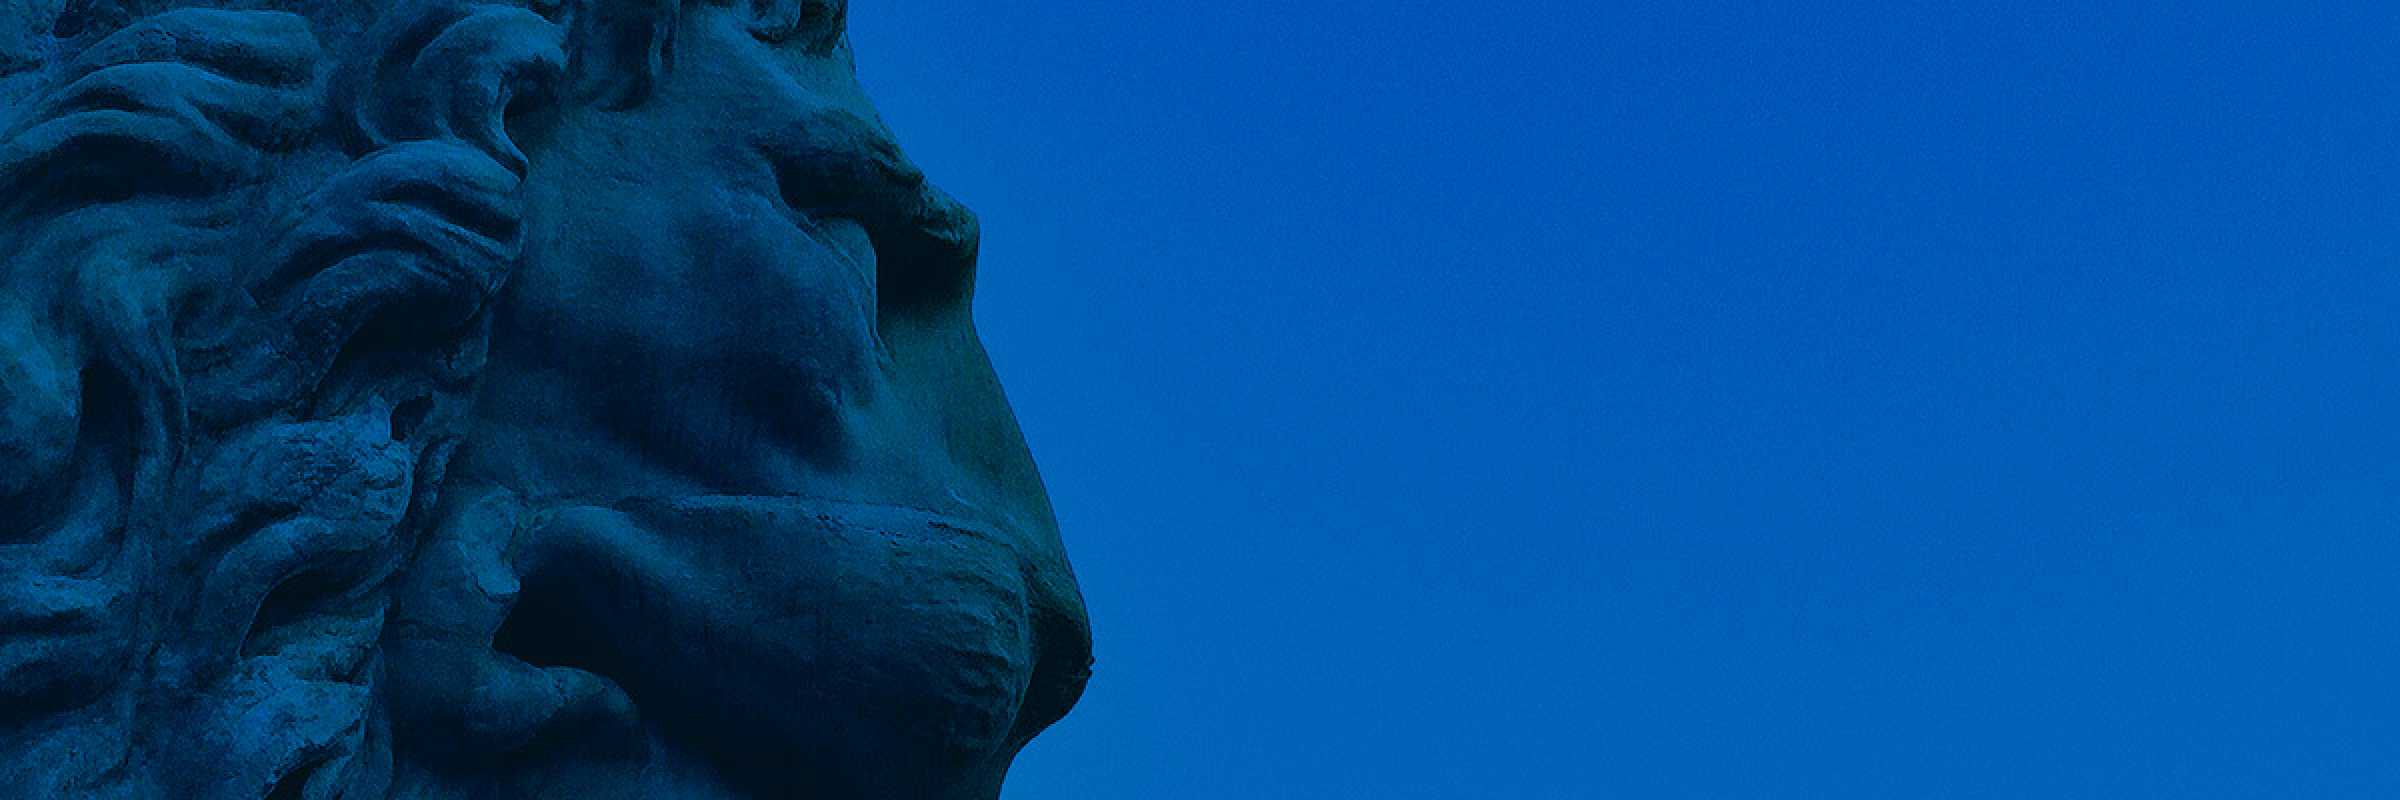 Particolare di testa di leone, posizionata all'uscita dell'Arsenale di Venezia. — (Archivio Venipedia/Bazzmann)